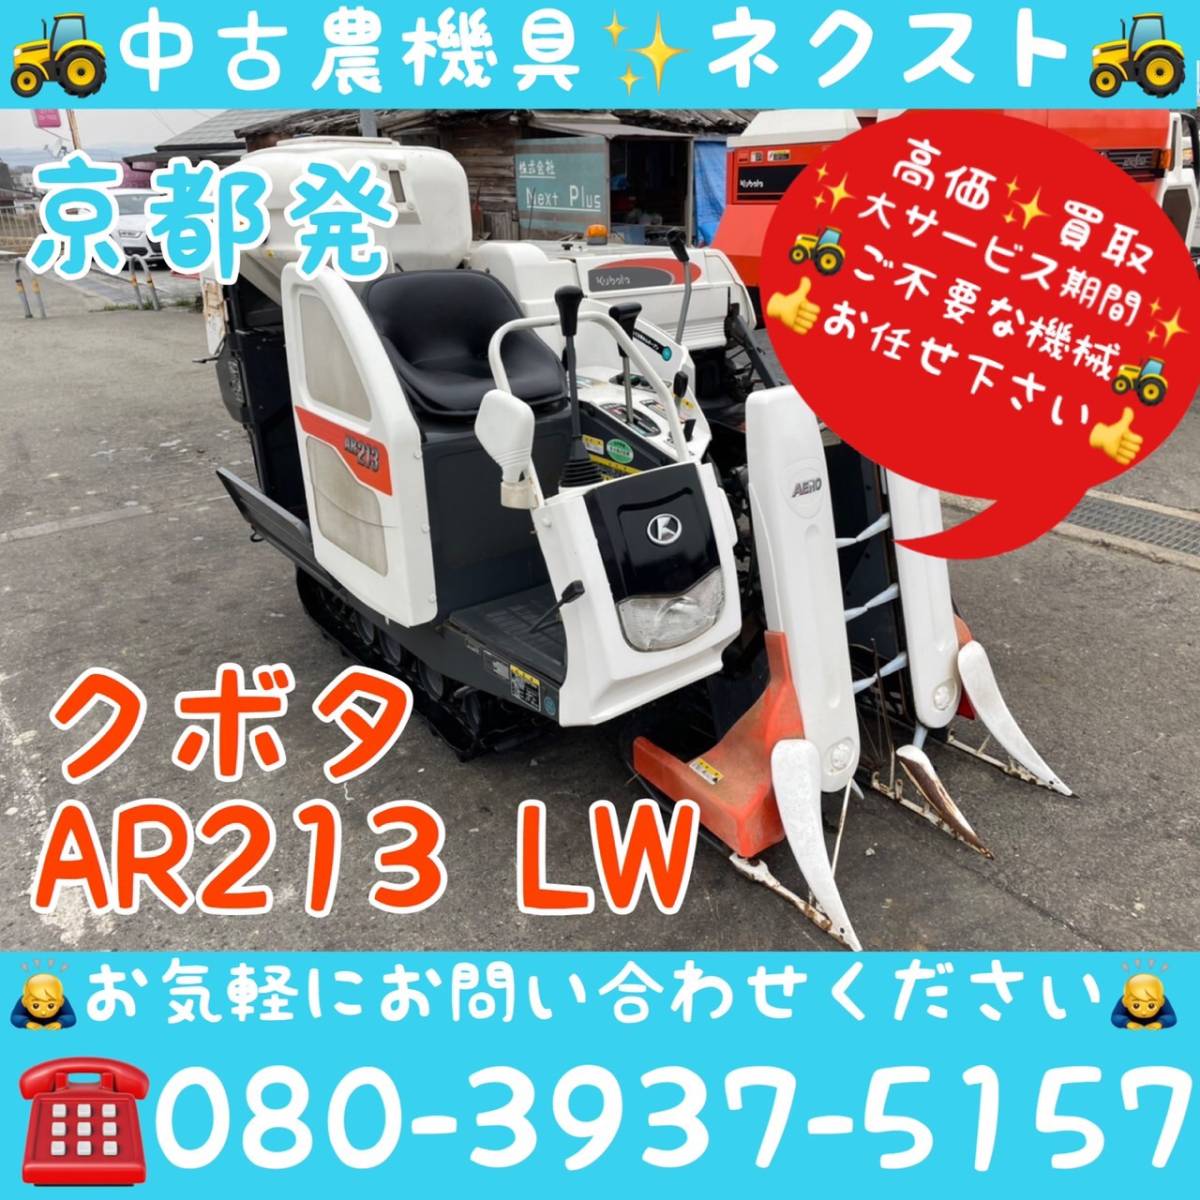 クボタ AR213-LW 497時間 コンバイン 現状 京都発